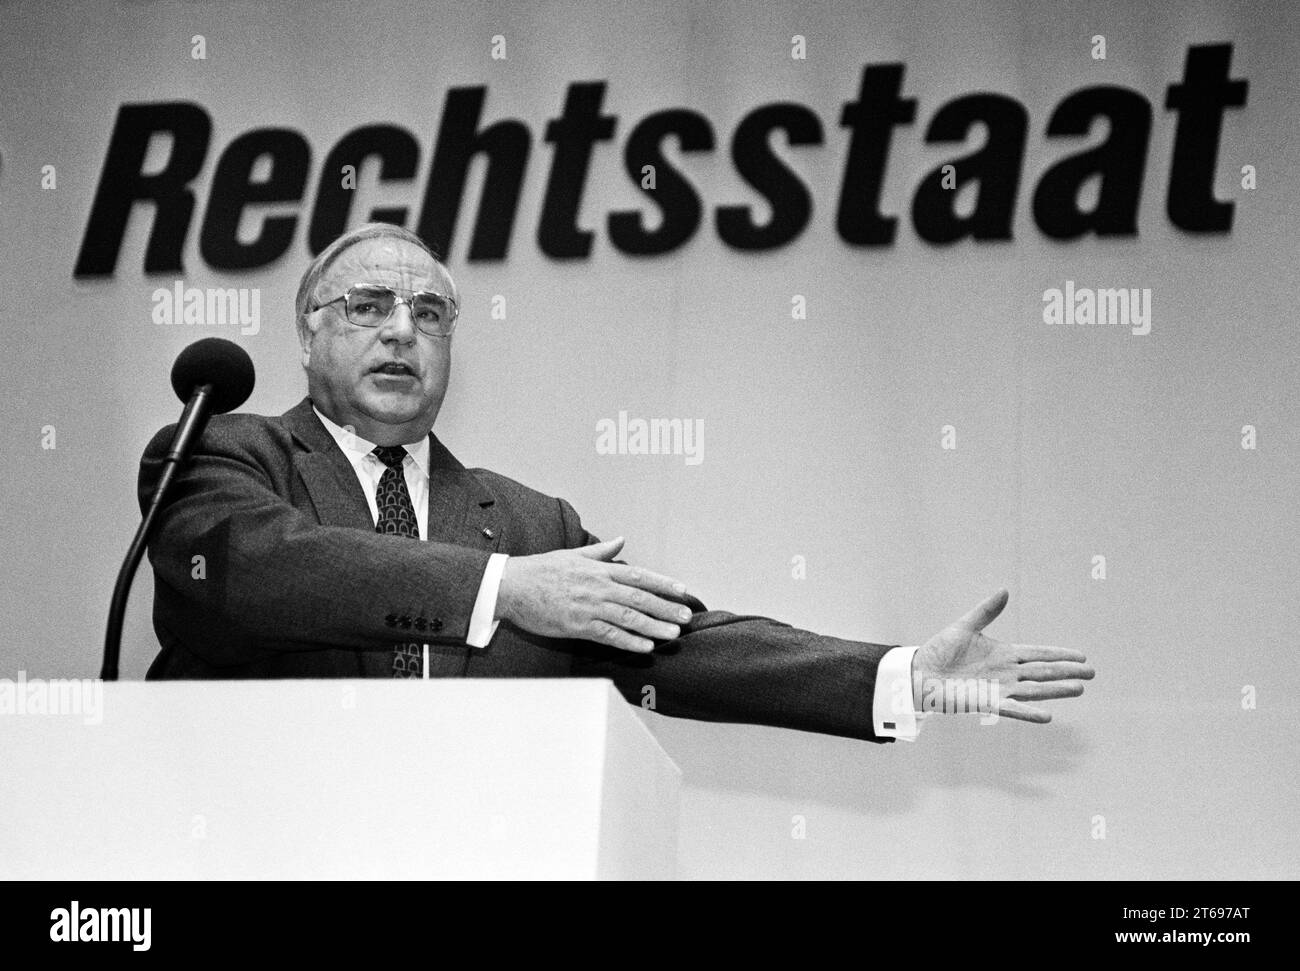 Deutschland, Neuss, 16/01/1993 Archiv: 38 21. 35-35 NRW-CDU Landesparteikonferenz Foto: Bundeskanzler Helmut Kohl [automatisierte Übersetzung] Stockfoto